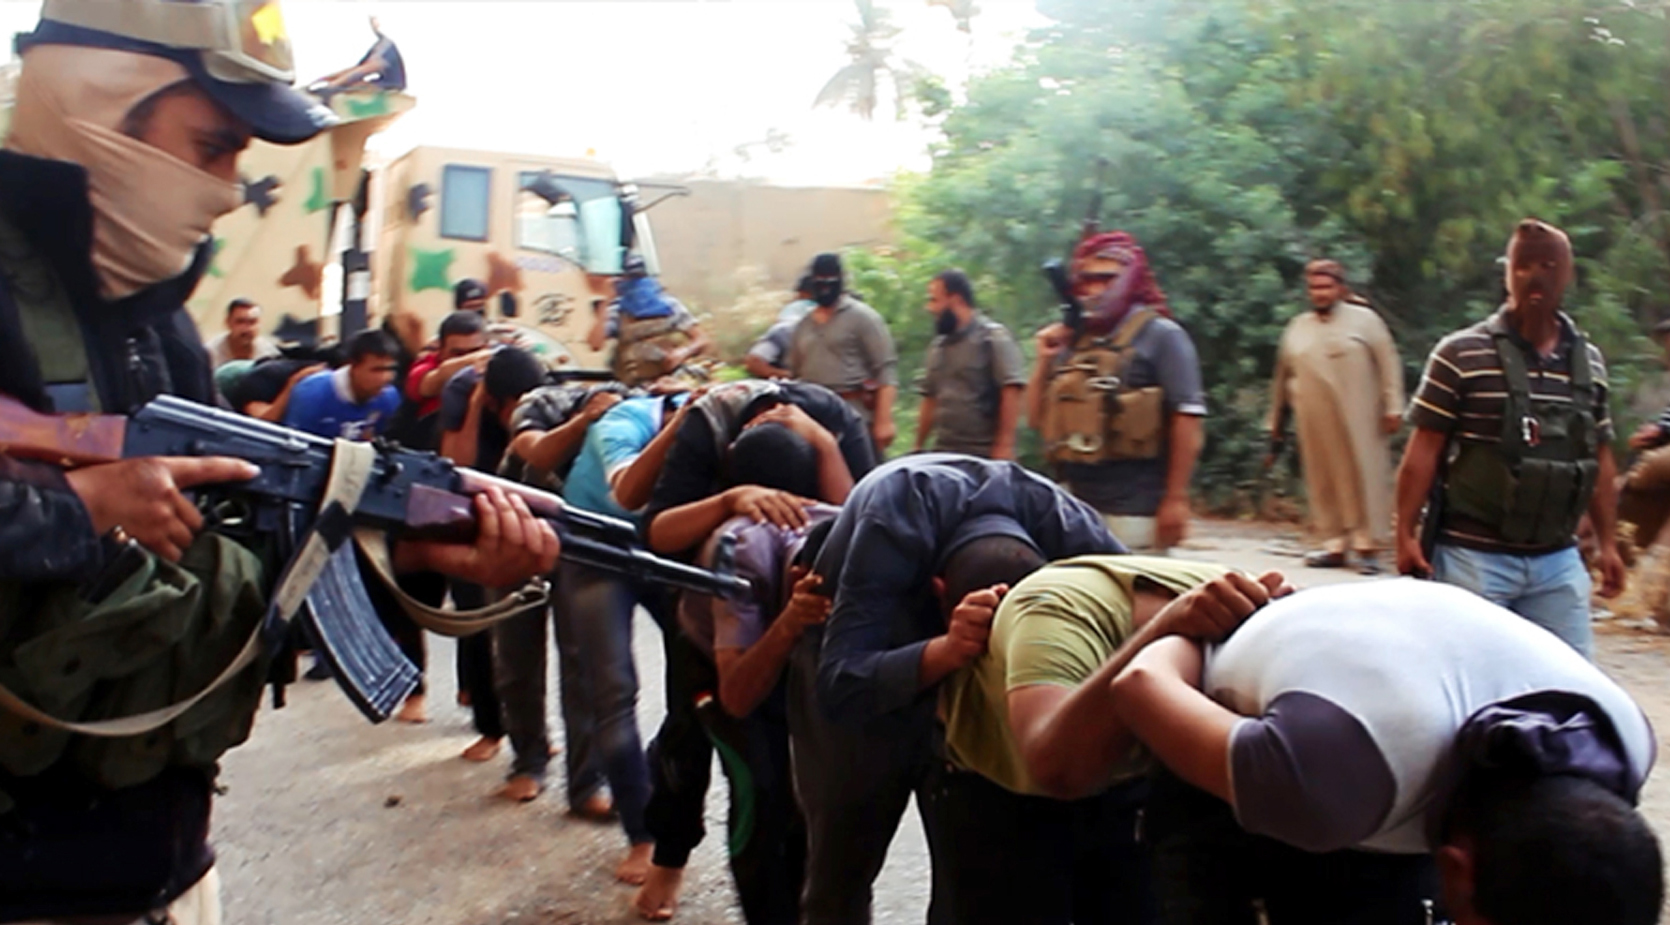 Σοκ προκαλούν φωτογραφίες με μαζικές εκτελέσεις από τζιχαντιστές στο Ιράκ